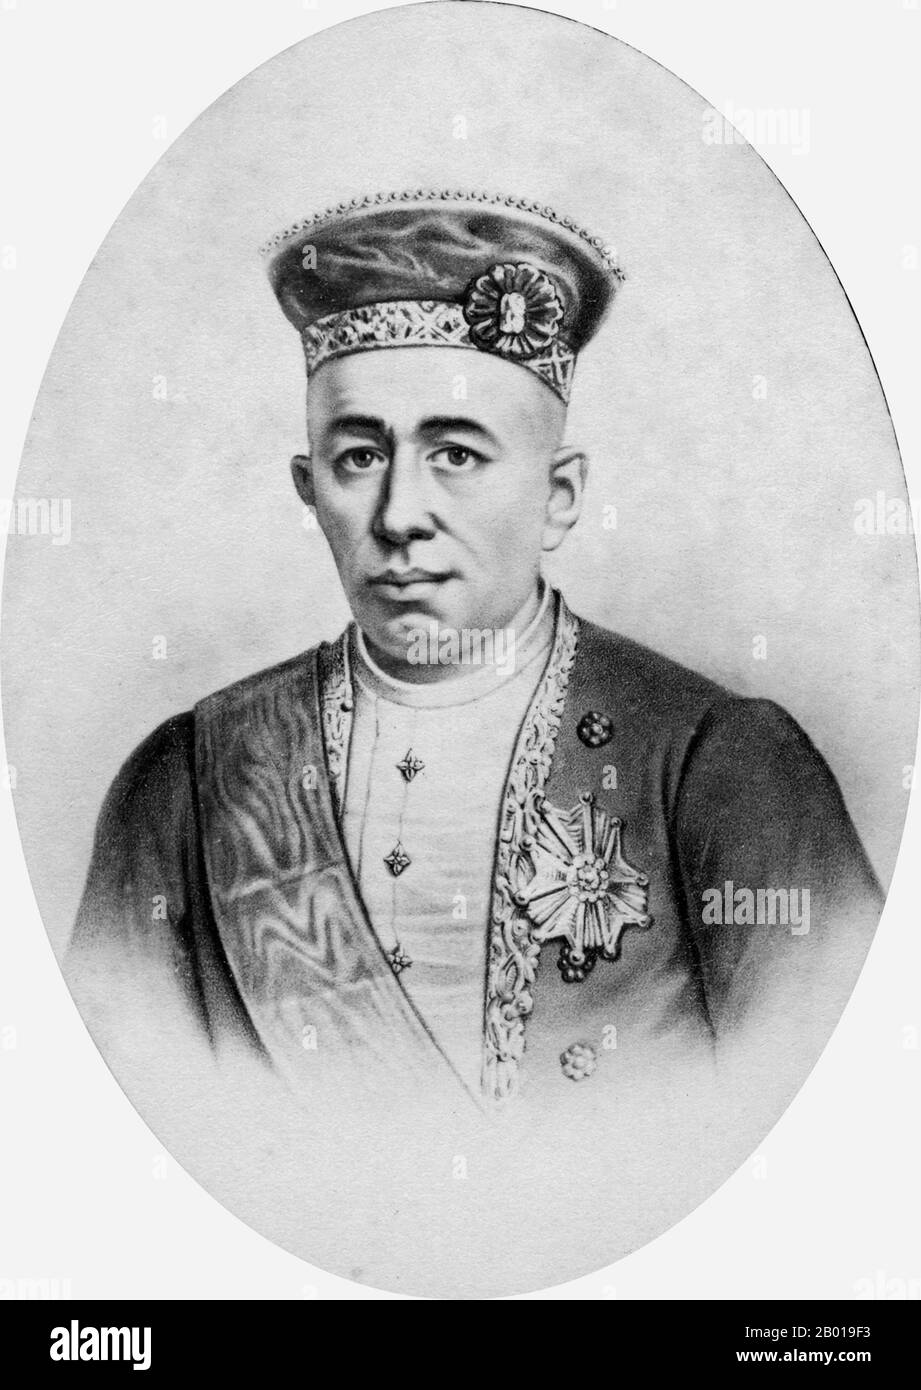 Thailandia: Mongkut (18 ottobre 1804 - 1 ottobre 1868), quarto re del Siam. Scheda di visita di Charles Jacotin (fl. 1863-1895), c.. 1863-1868. Mongkut, noto anche come Rama IV e nome completo Phra Bat Somdet Phra Menthora Ramathibodi Sri Sinthara Mahamakut Phra Mongkut Phra Siam Deva Mahamakut Wittaya Maharaj, era il quarto re del Siam della Casa di Chakri. Governando dal 1851 fino alla sua morte nel 1868, è meglio conosciuto a livello internazionale come il re nel musical 'il Re ed i' del 1951, basato sul romanzo del 1944 sugli anni di Anna Leonowens alla sua corte. Foto Stock